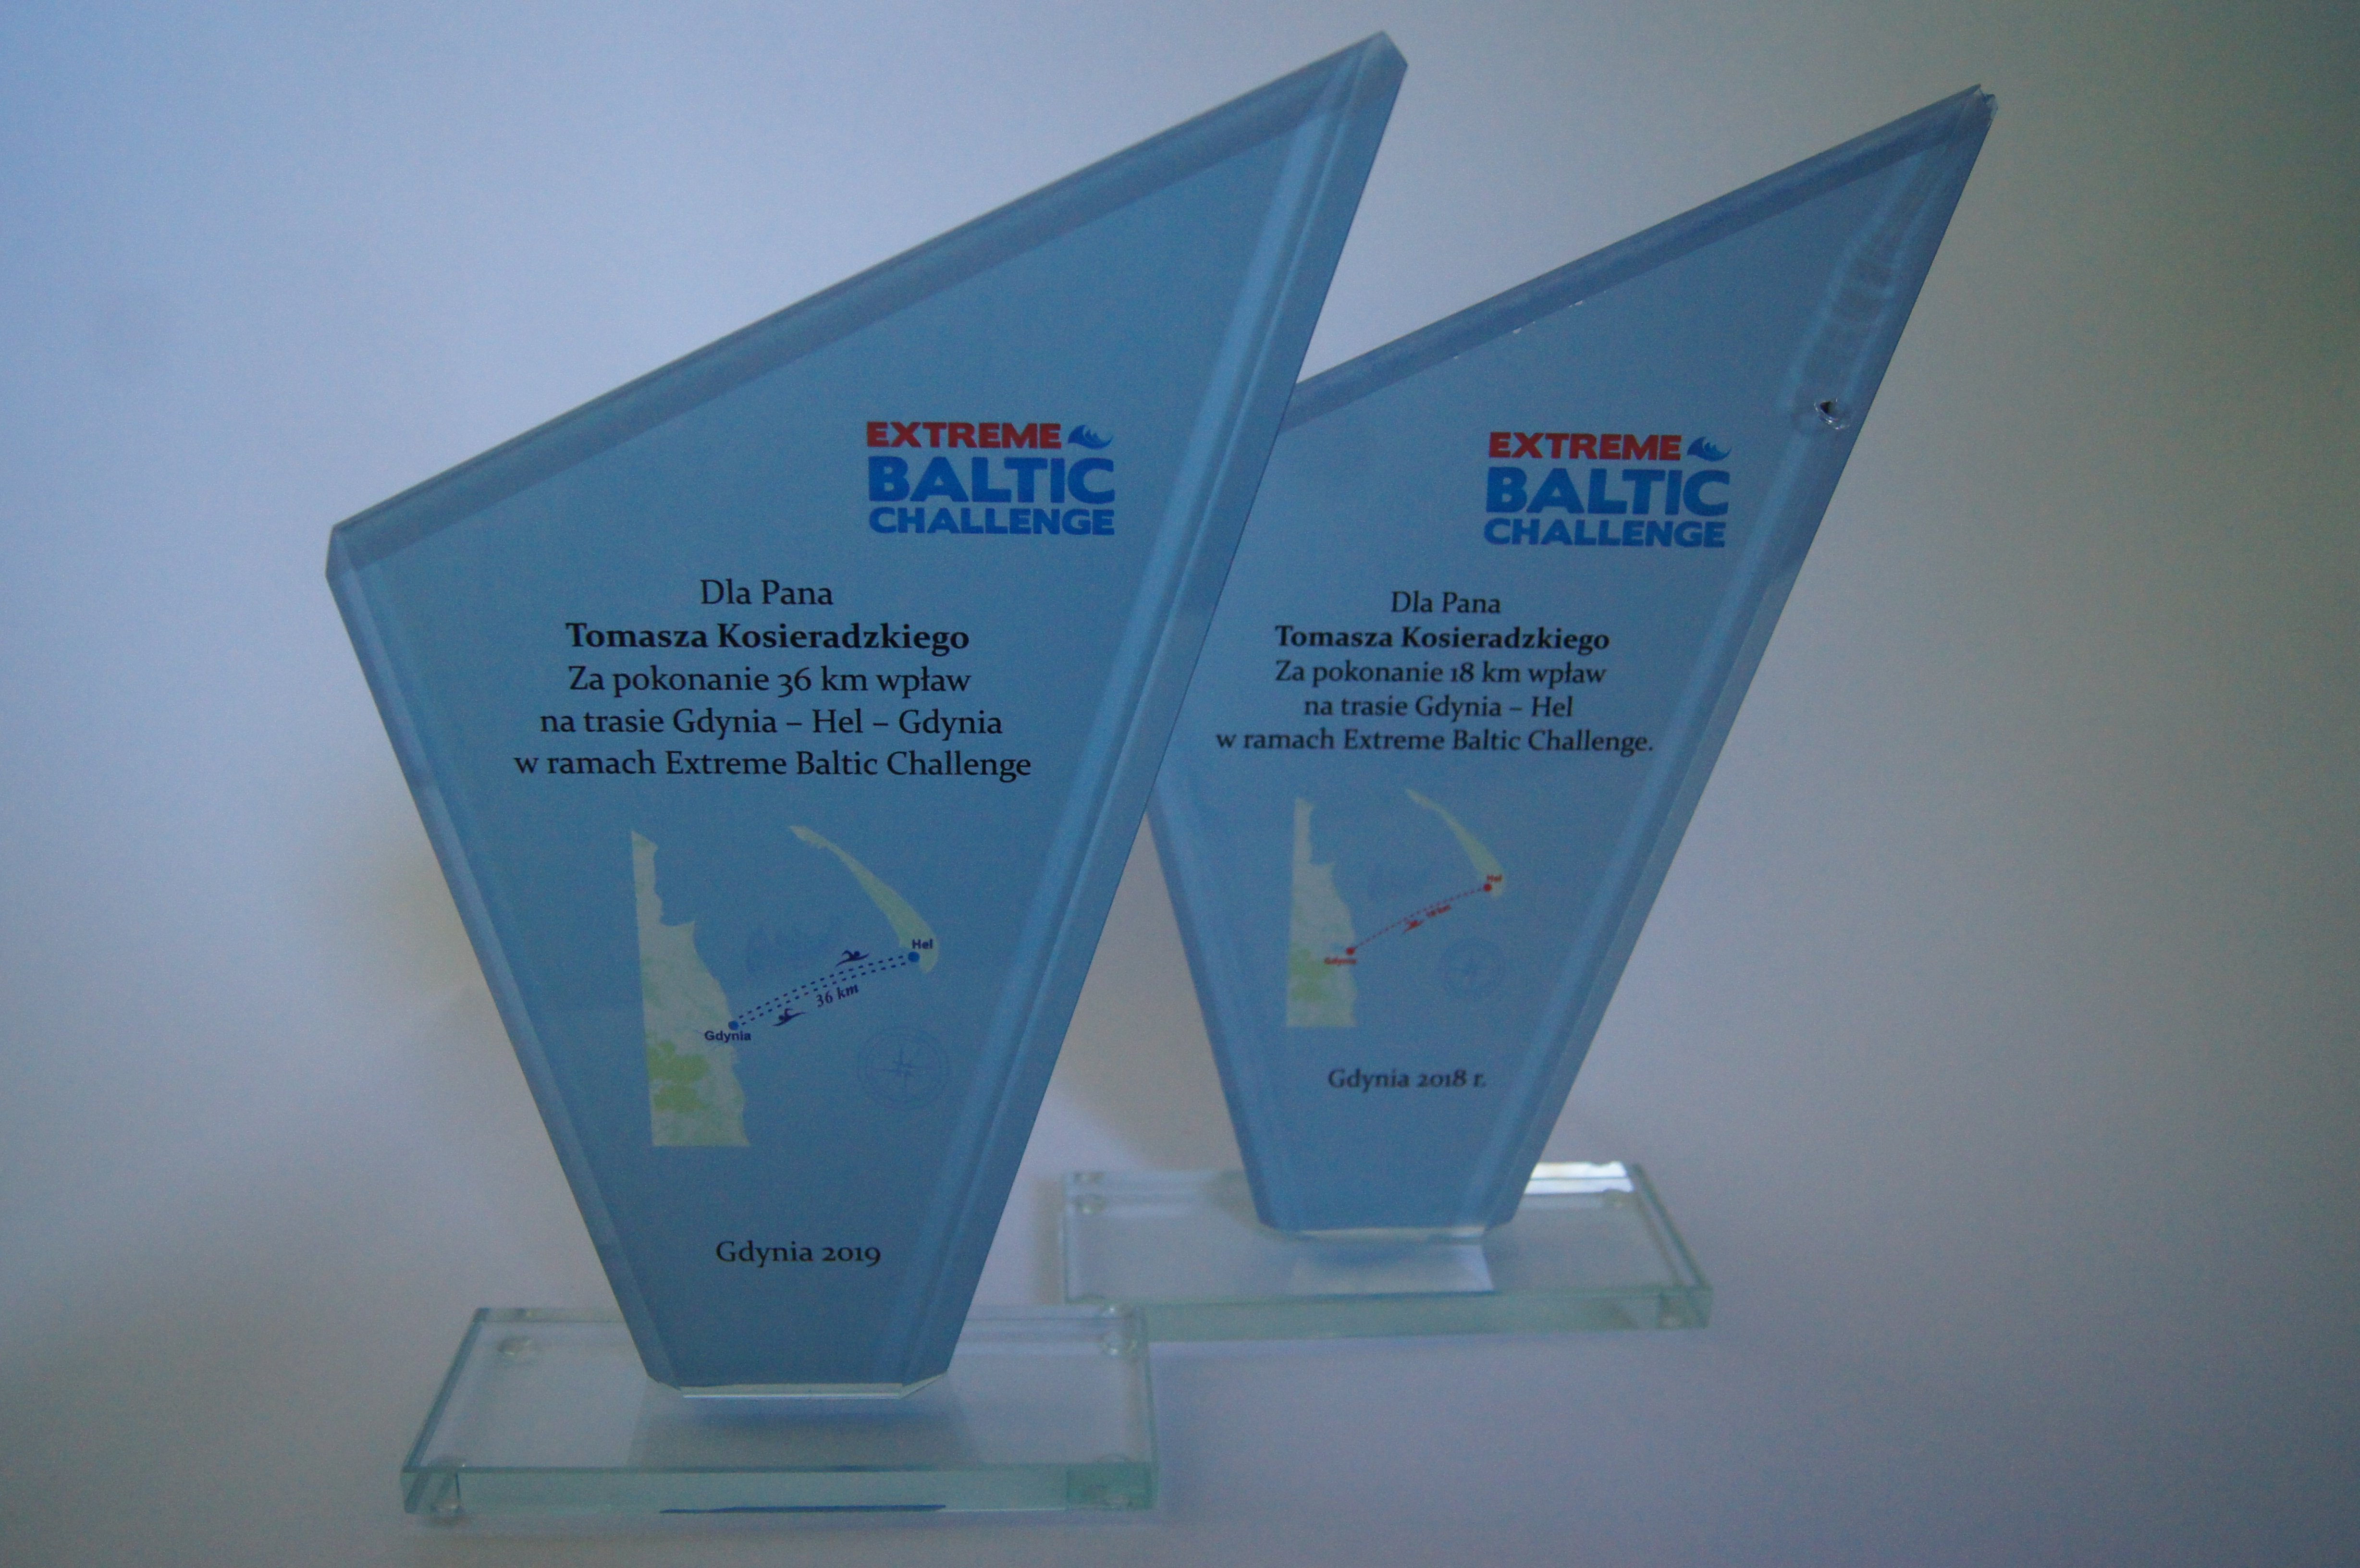 Tomasz Kosieradzki Extreme Baltic Challenge Award